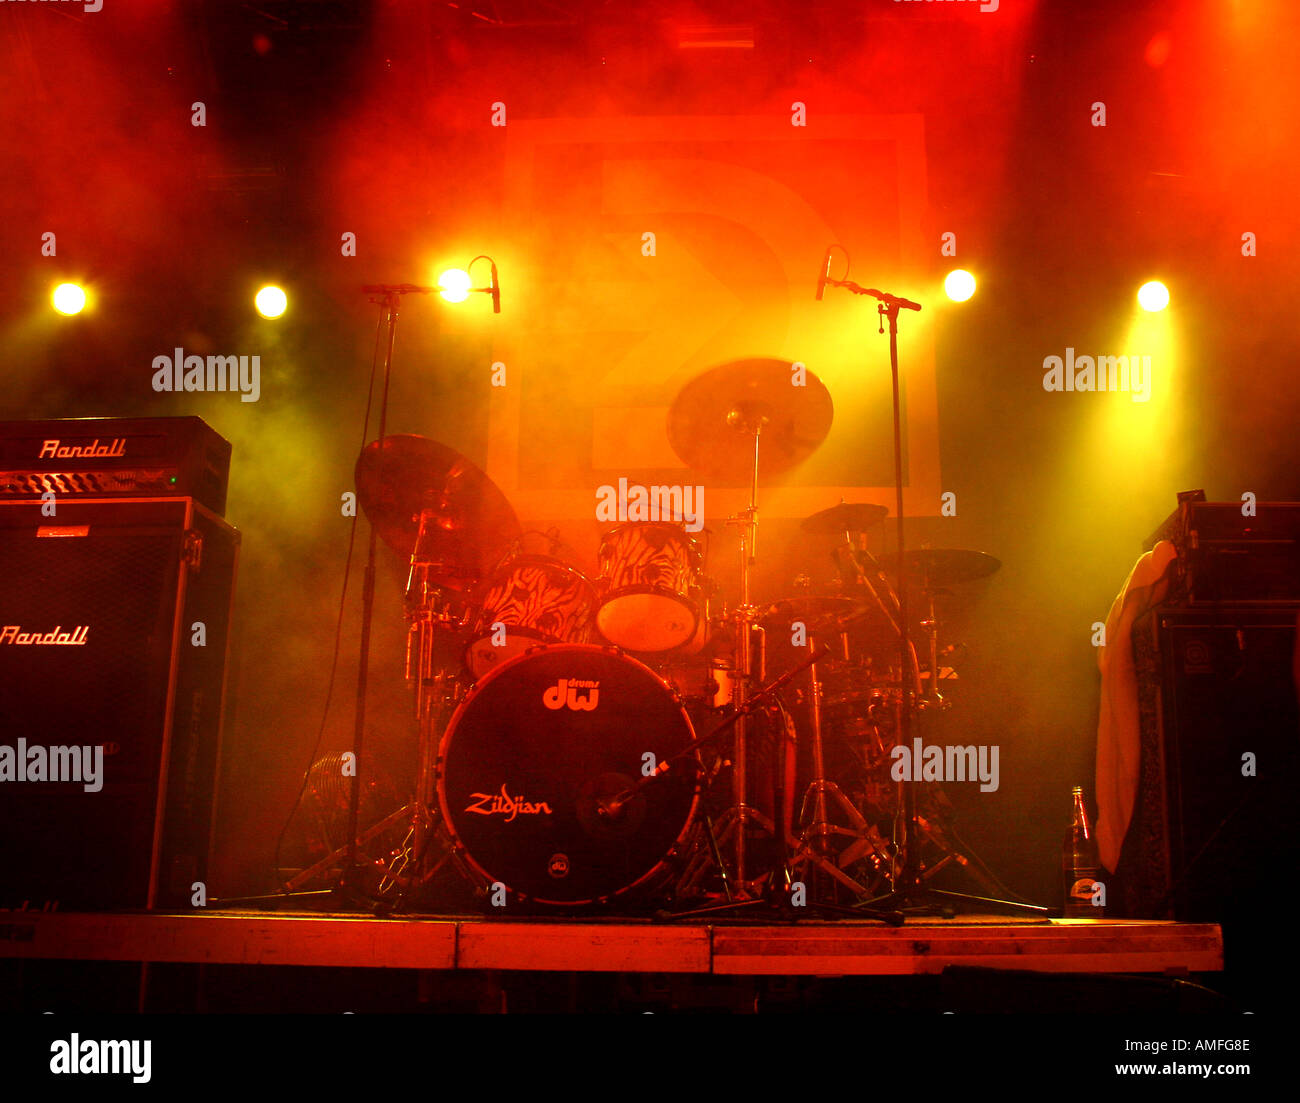 Schlagzeug auf der Bühne unter rauchigen Bühnenbeleuchtung Stockfoto